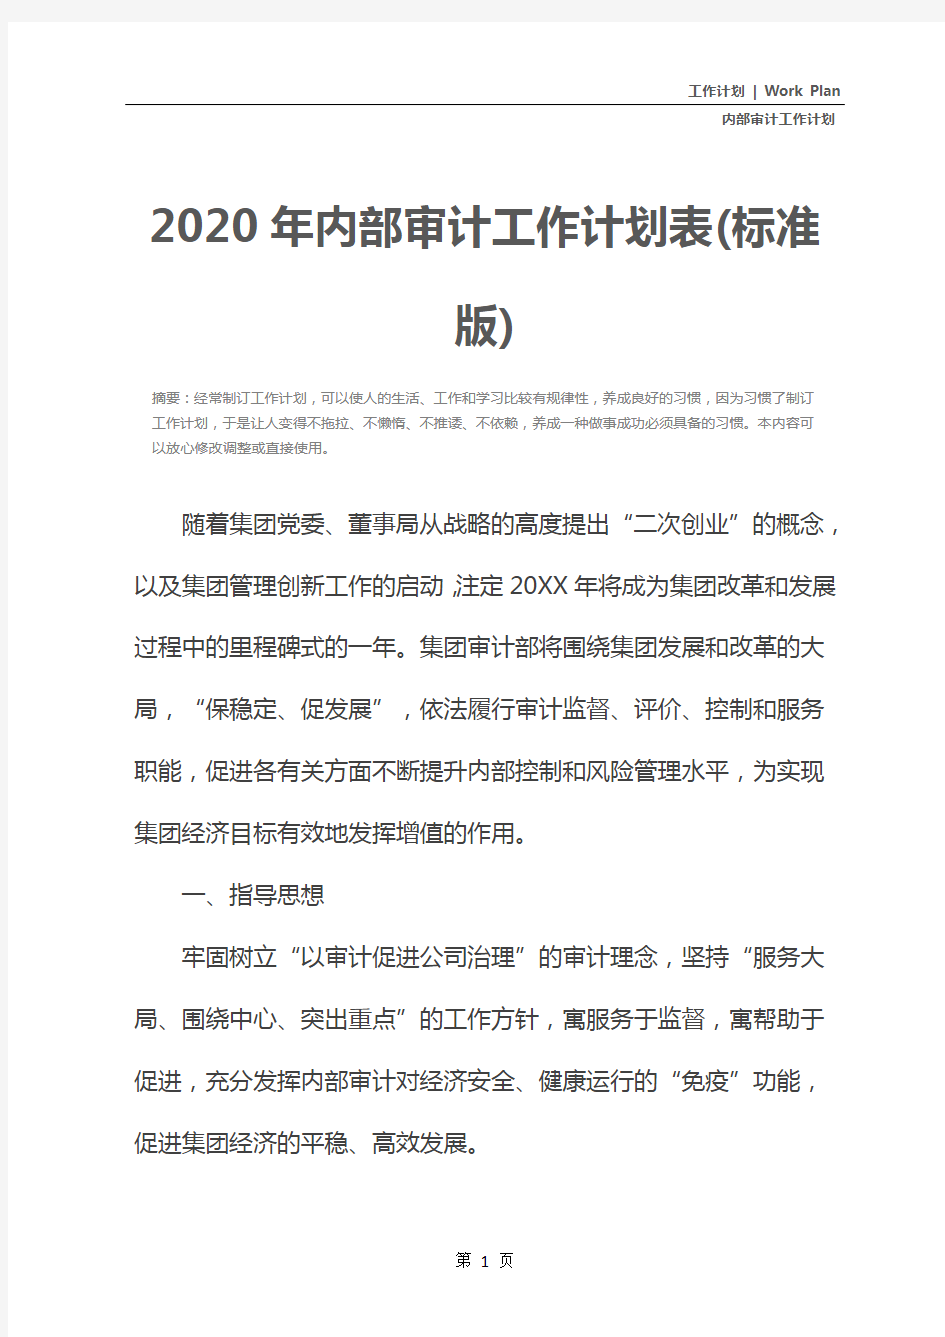 2020年内部审计工作计划表(标准版)